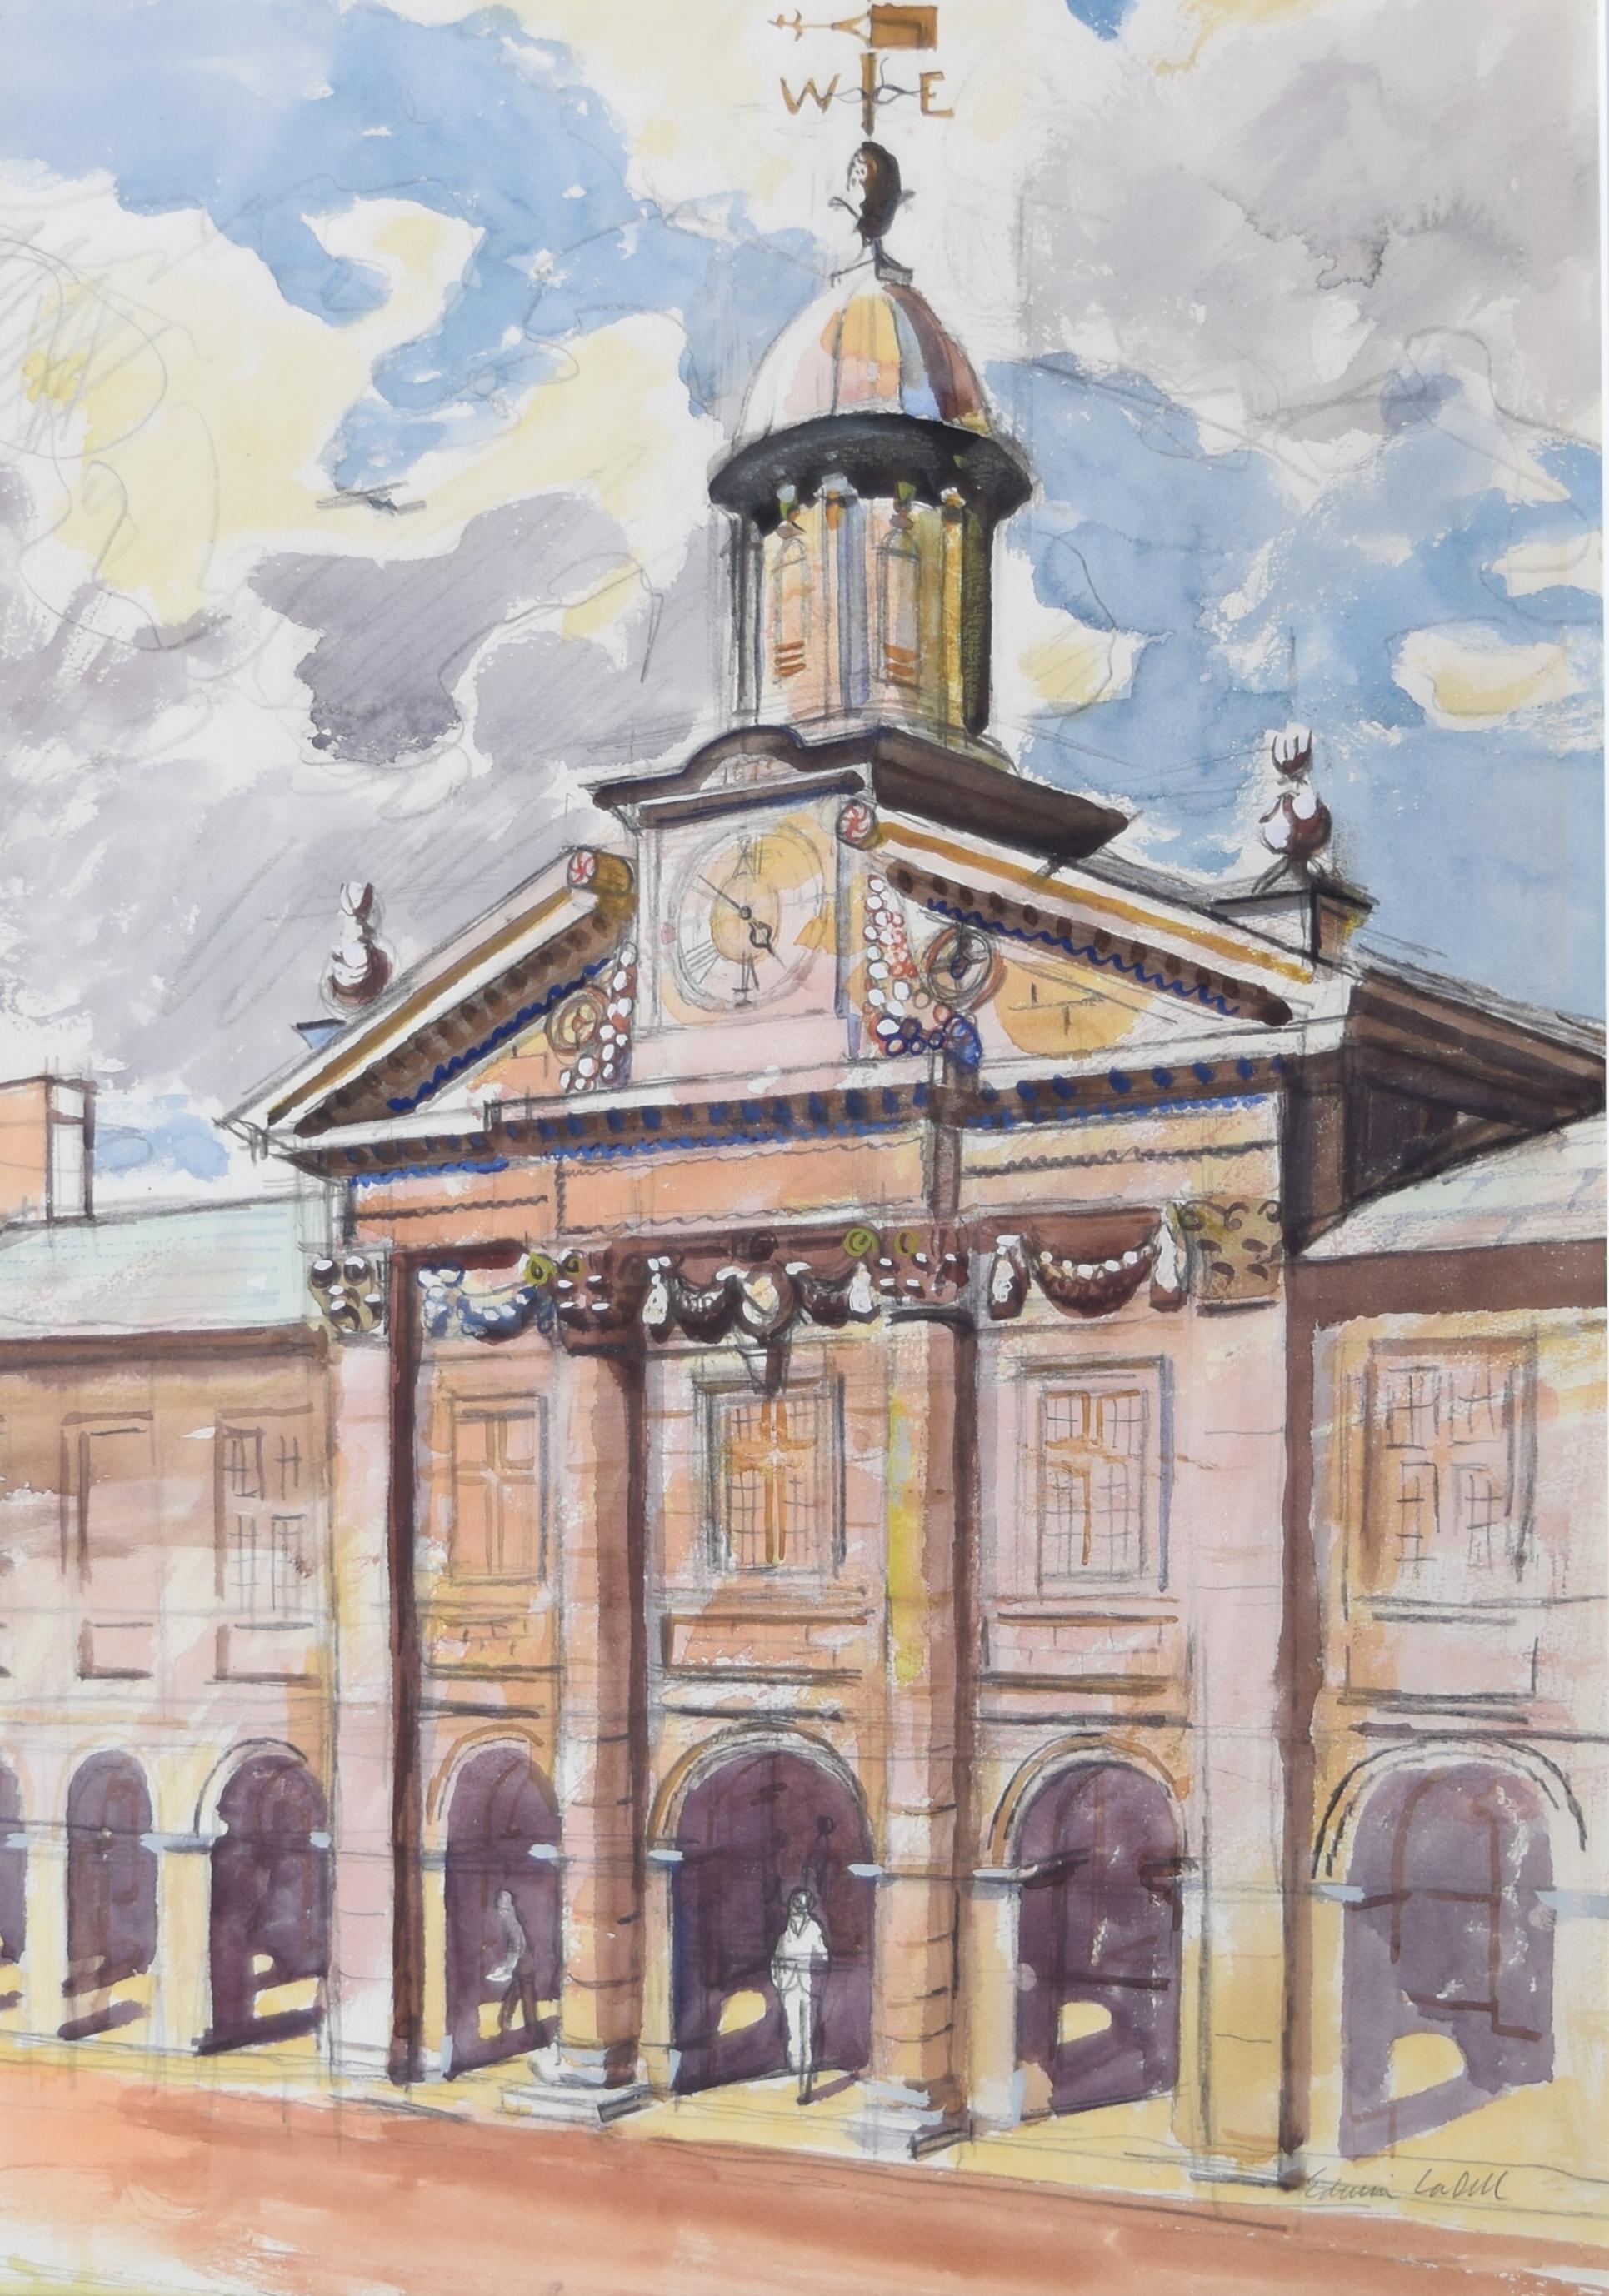 Weitere Ansichten von Oxford und Cambridge finden Sie in unseren anderen Beständen.

Edwin La Dell ARA (1914-1970)
Emmanuel College Cambridge
Unterzeichnet
Aquarell über Bleistift
46x32cm (18.11 X 12.6 in)
In schönem, handgemaltem